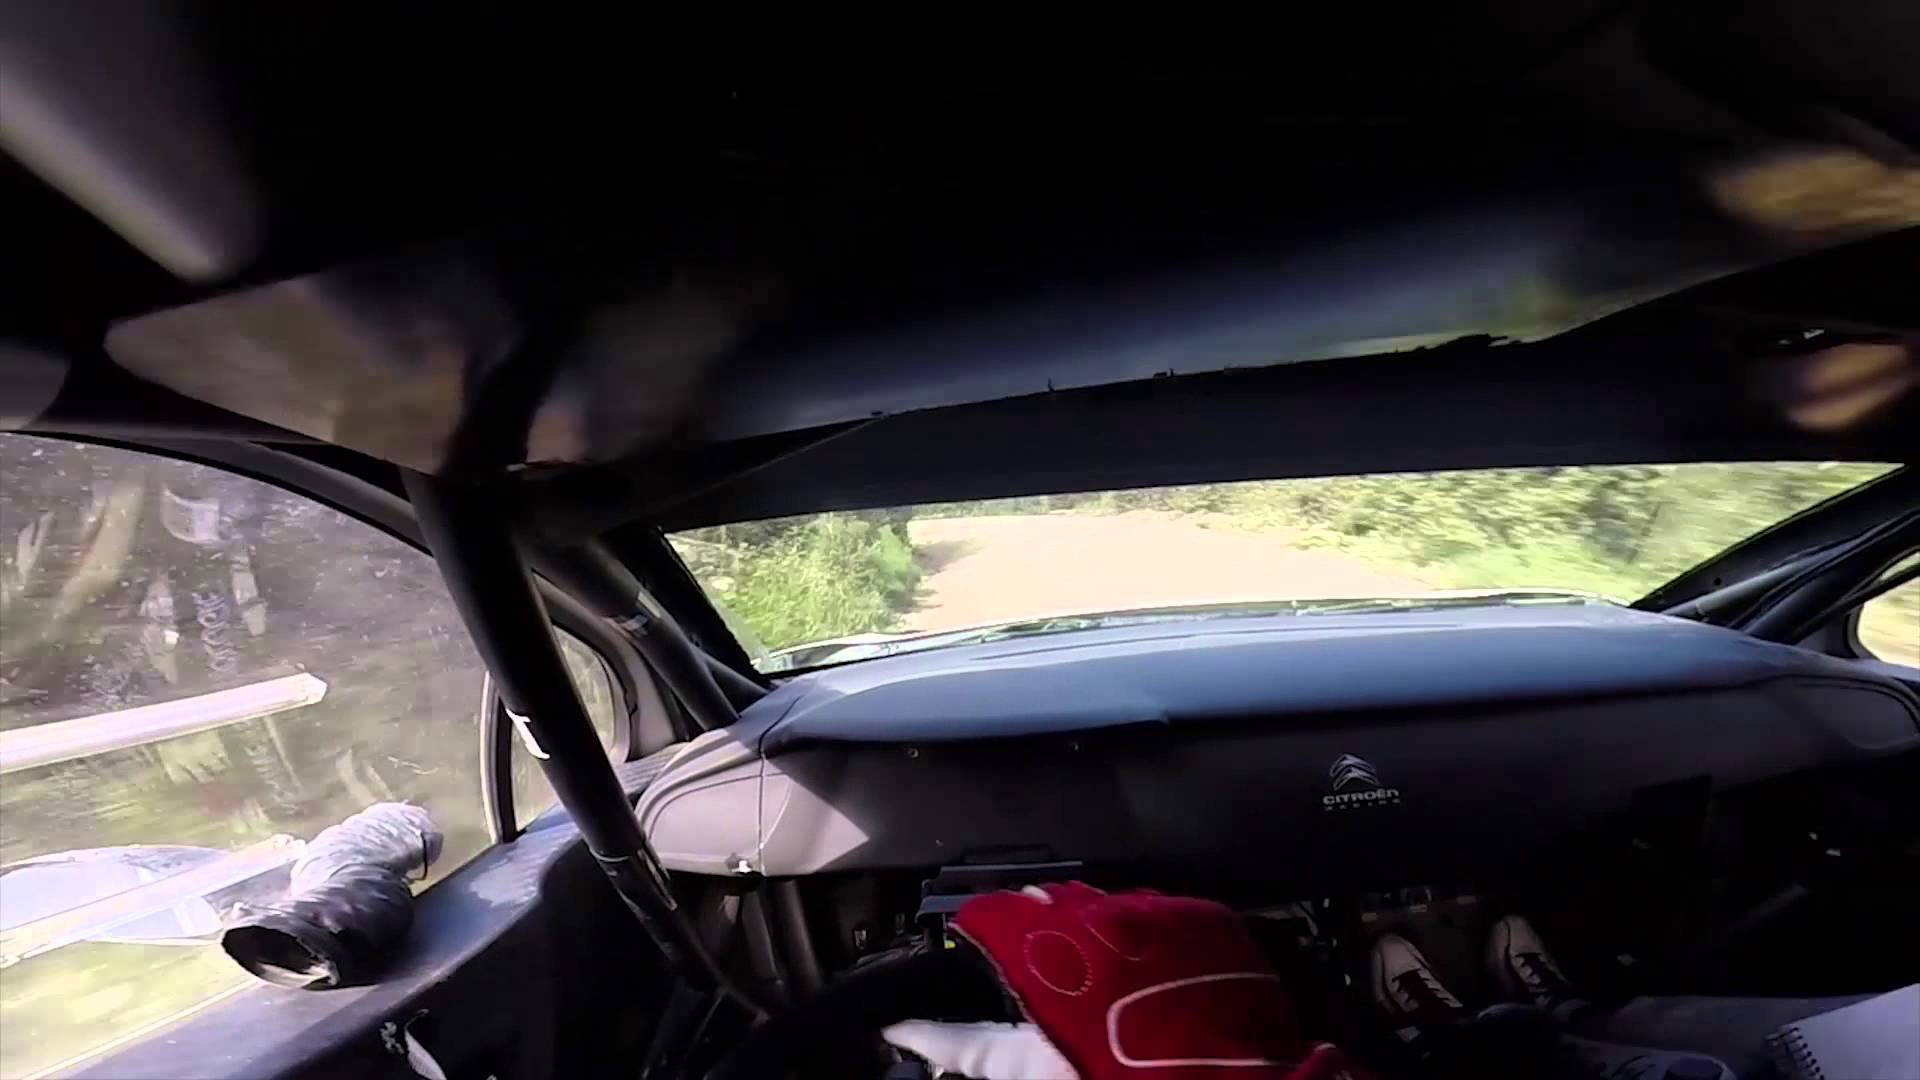 Kā izskatās rallijs no pilota skatpunkta? (How does it looks like WRC rally with pilot eyes?)